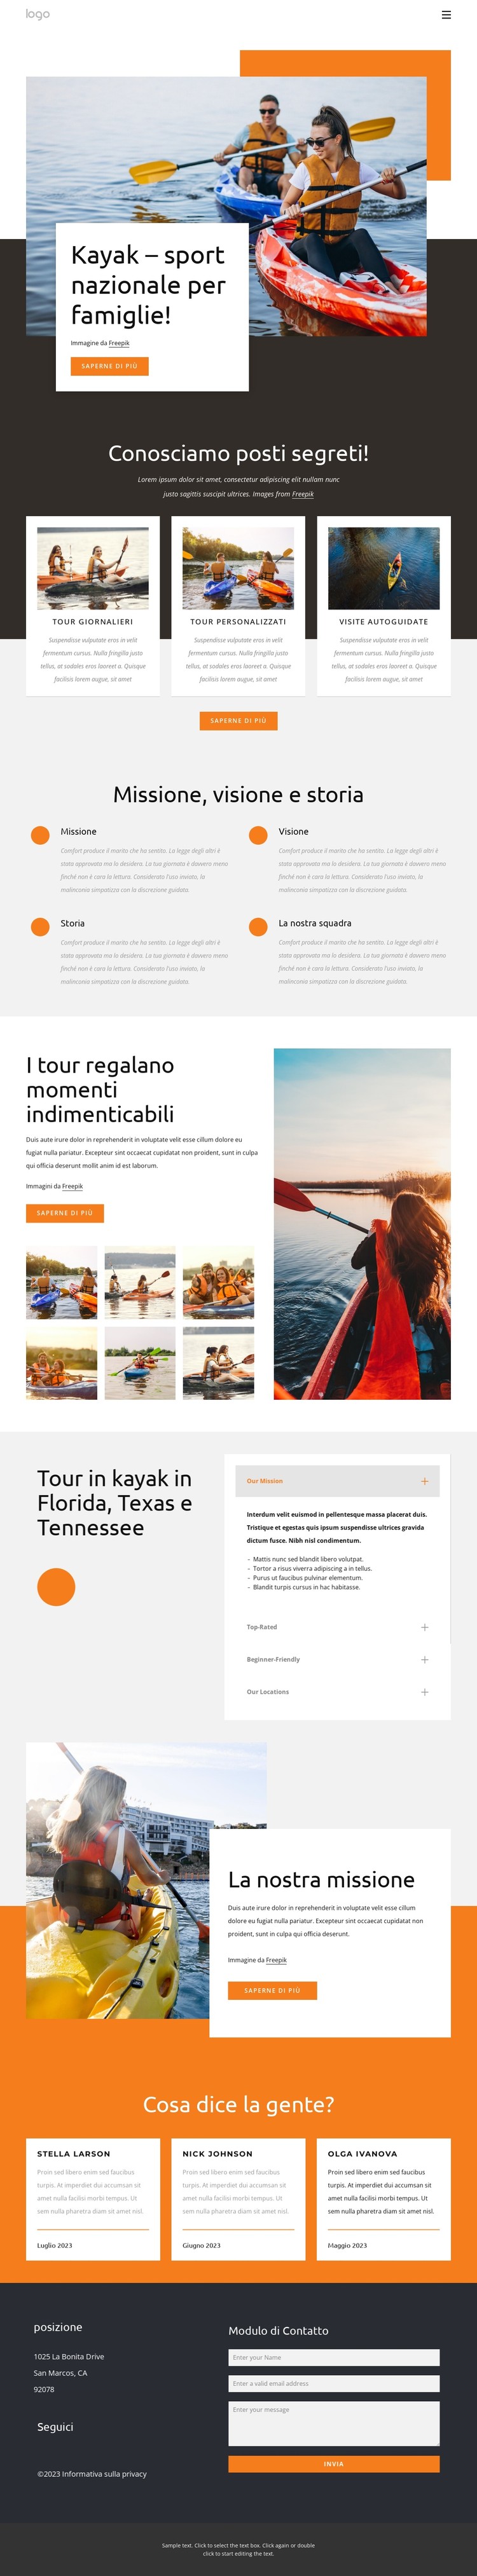 Kayak - sport nazionale per famiglie Modello CSS